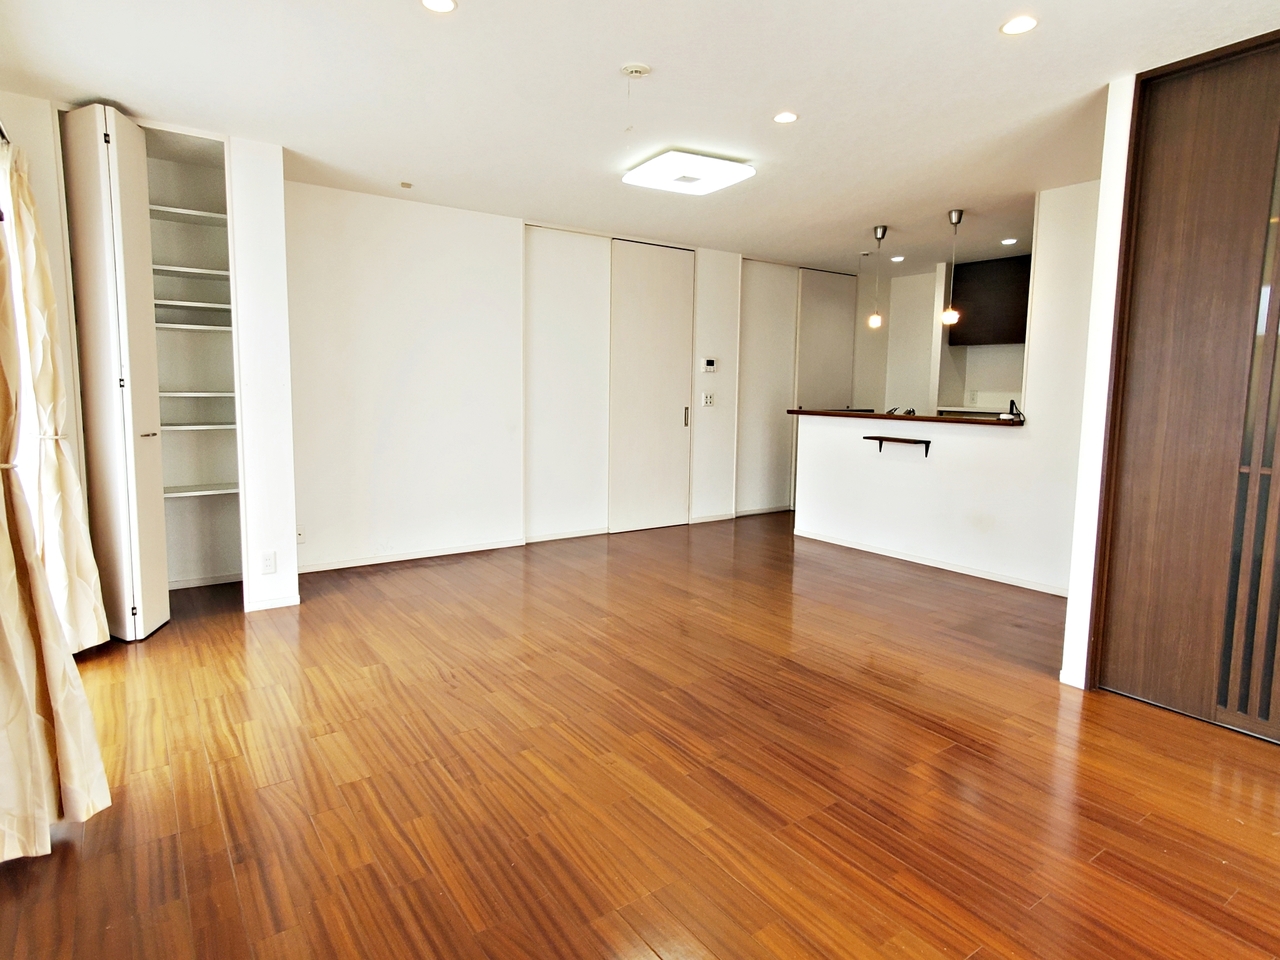 LDKは20畳の広さです。大きな家具を設置してもゆとりある空間です。収納もありますのでお部屋がスッキリと片付きます。